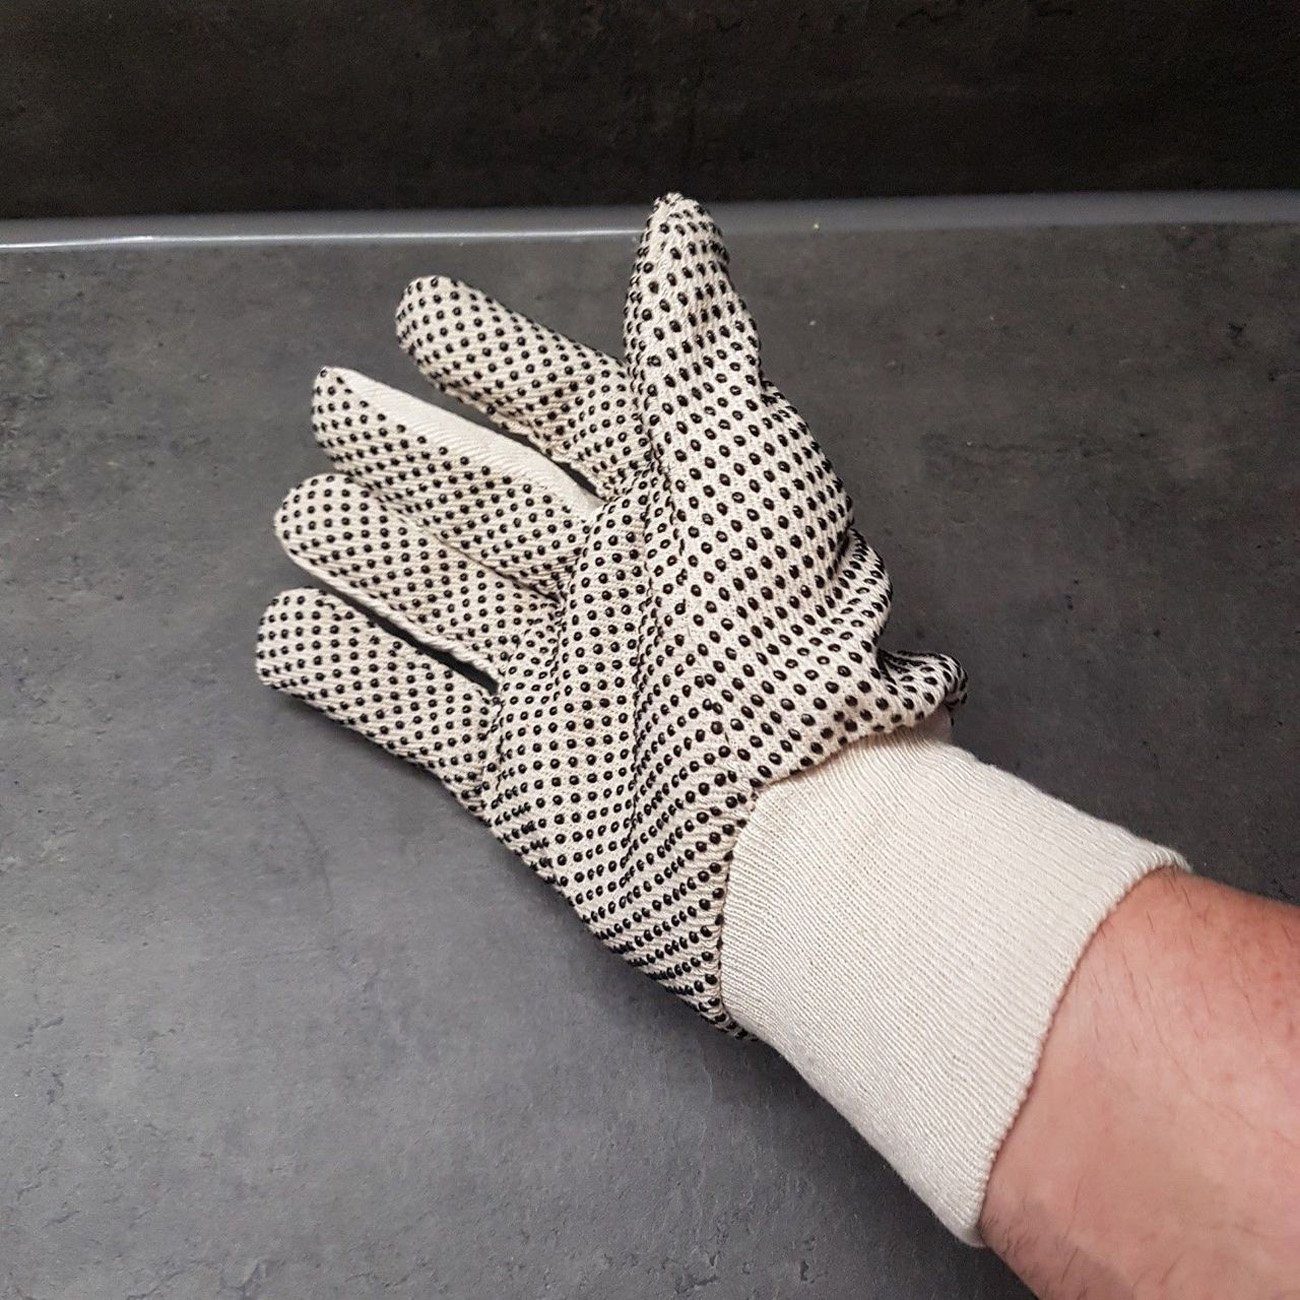 myMAW Montage-Handschuhe 12 Paar Arbeitshandschuhe Strick mit Noppen Gartenhandschuhe Bau…